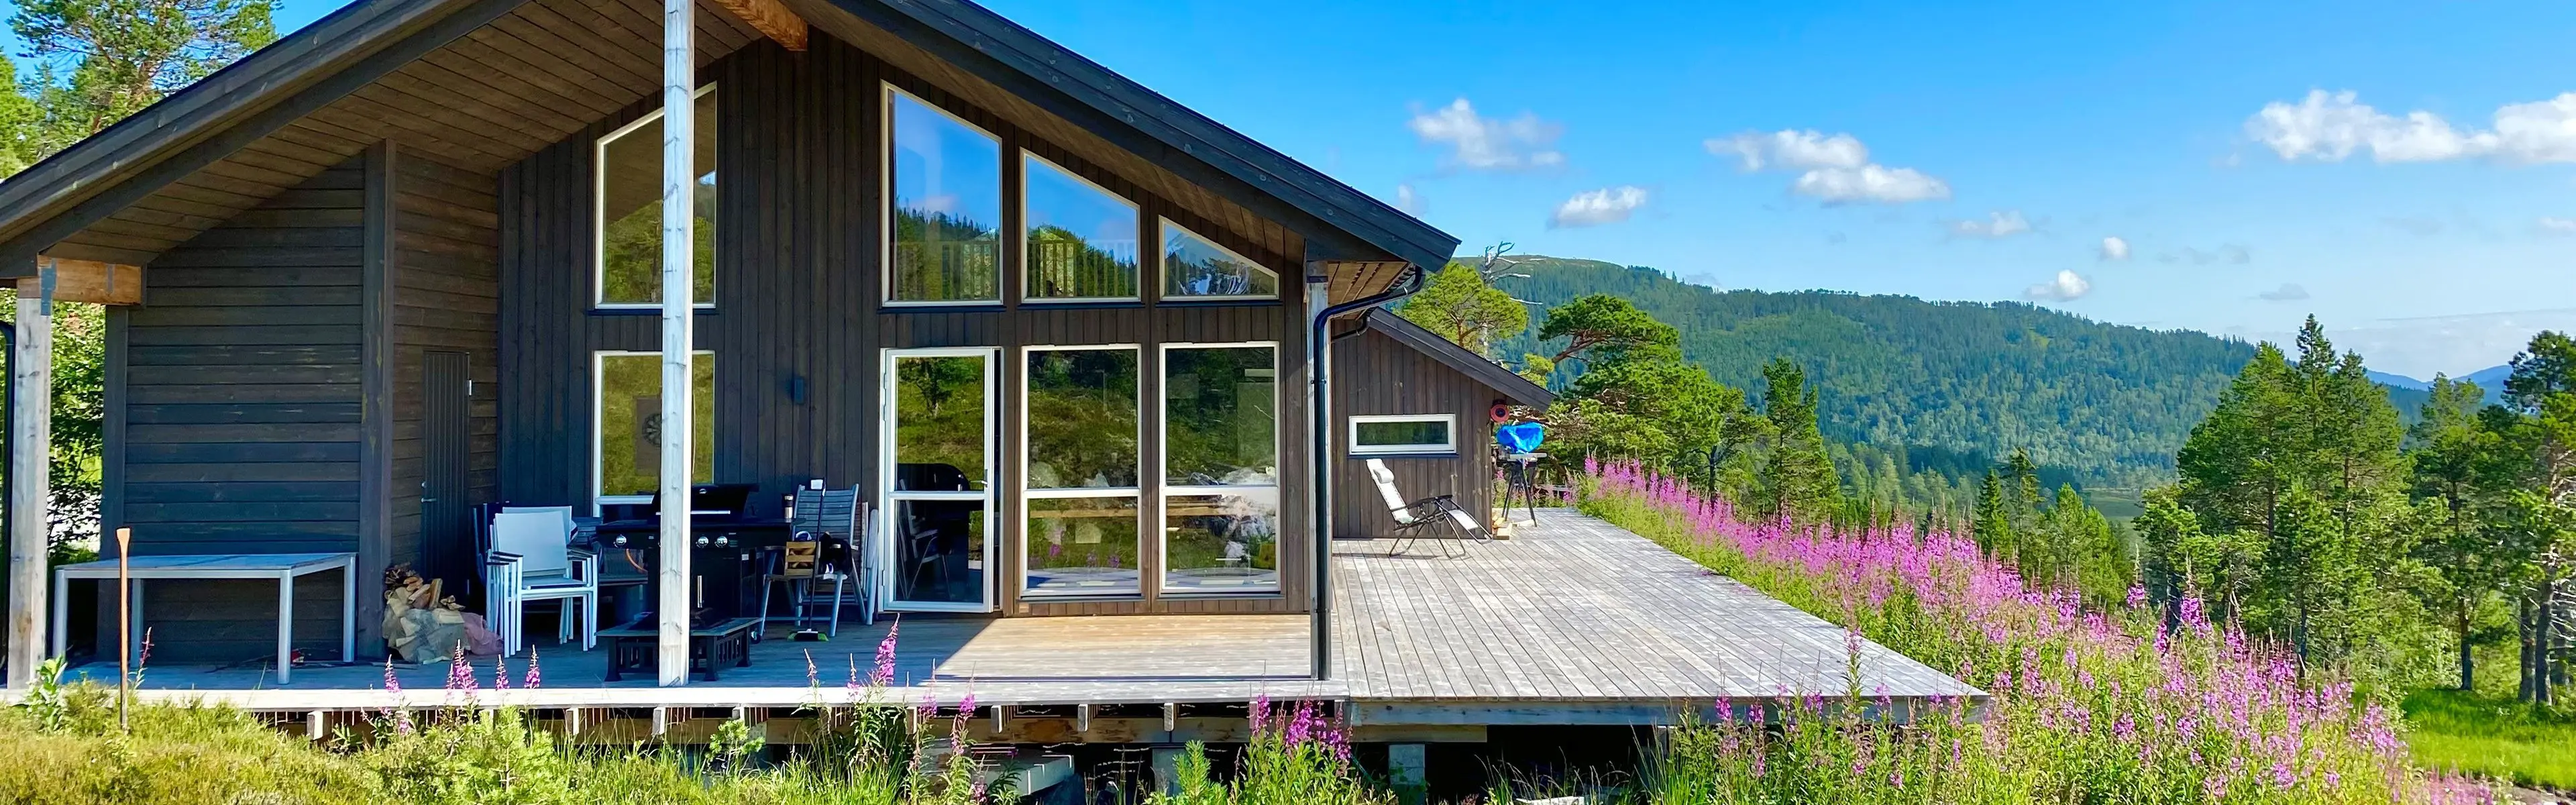 moderne, norsk hytte sett utenfra med blomstereng rundt terrassen